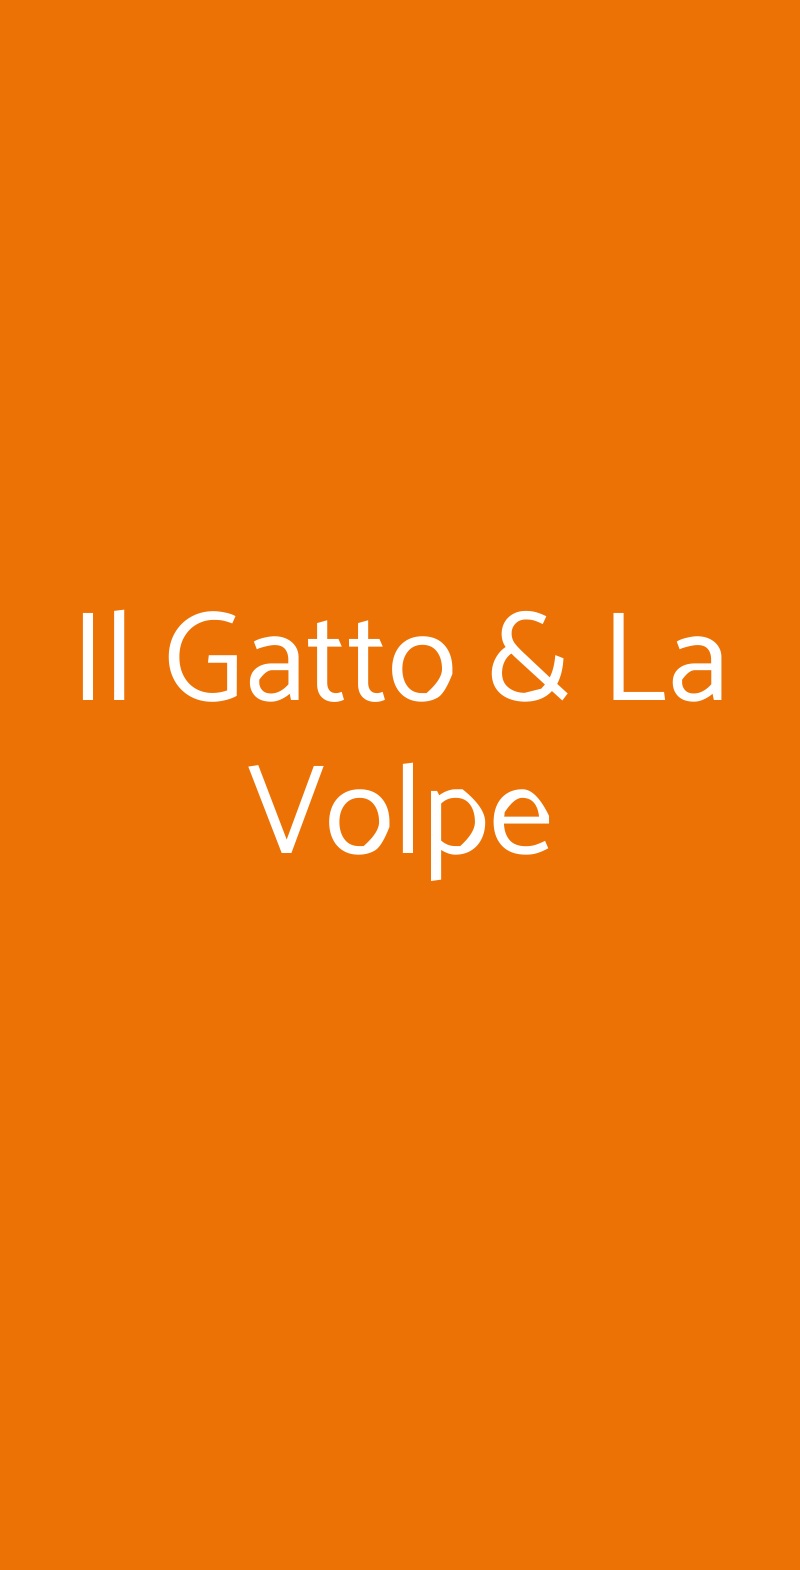 Il Gatto & La Volpe Avigliana menù 1 pagina